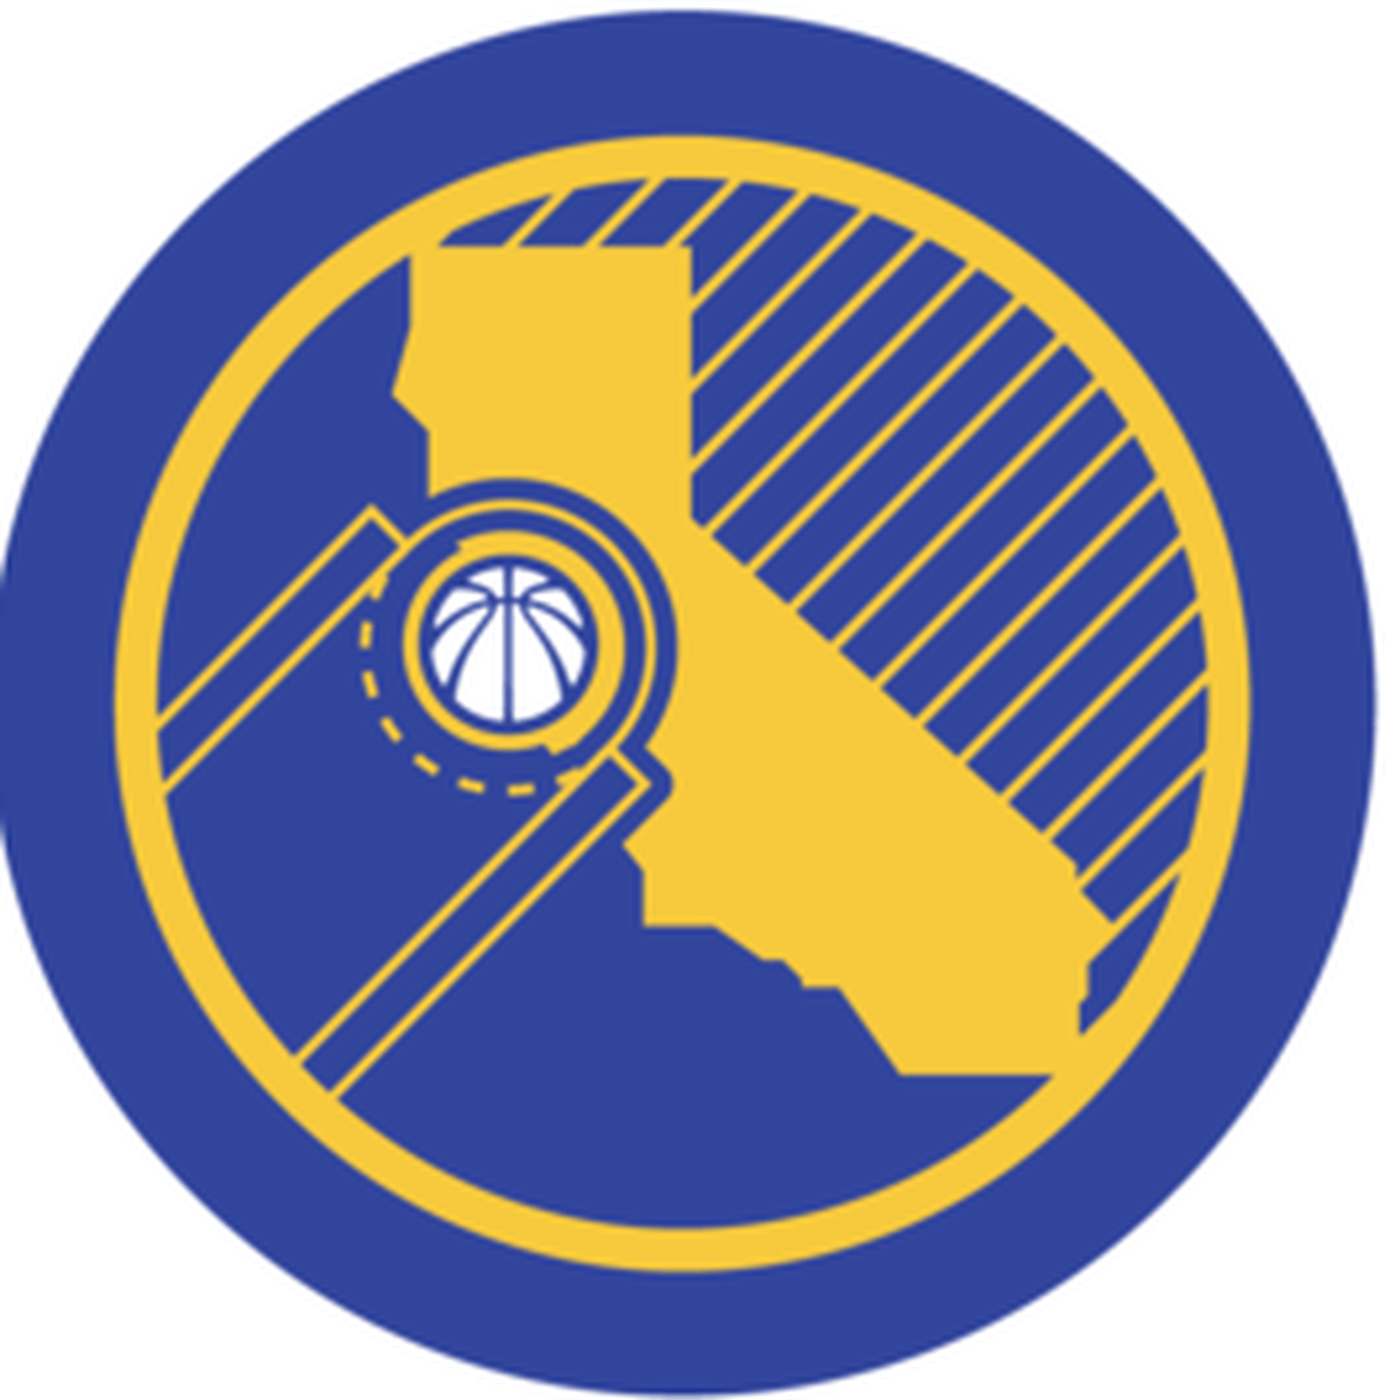 Golden State Logo - RUMOR: The new Golden State Warriors logo looks like this